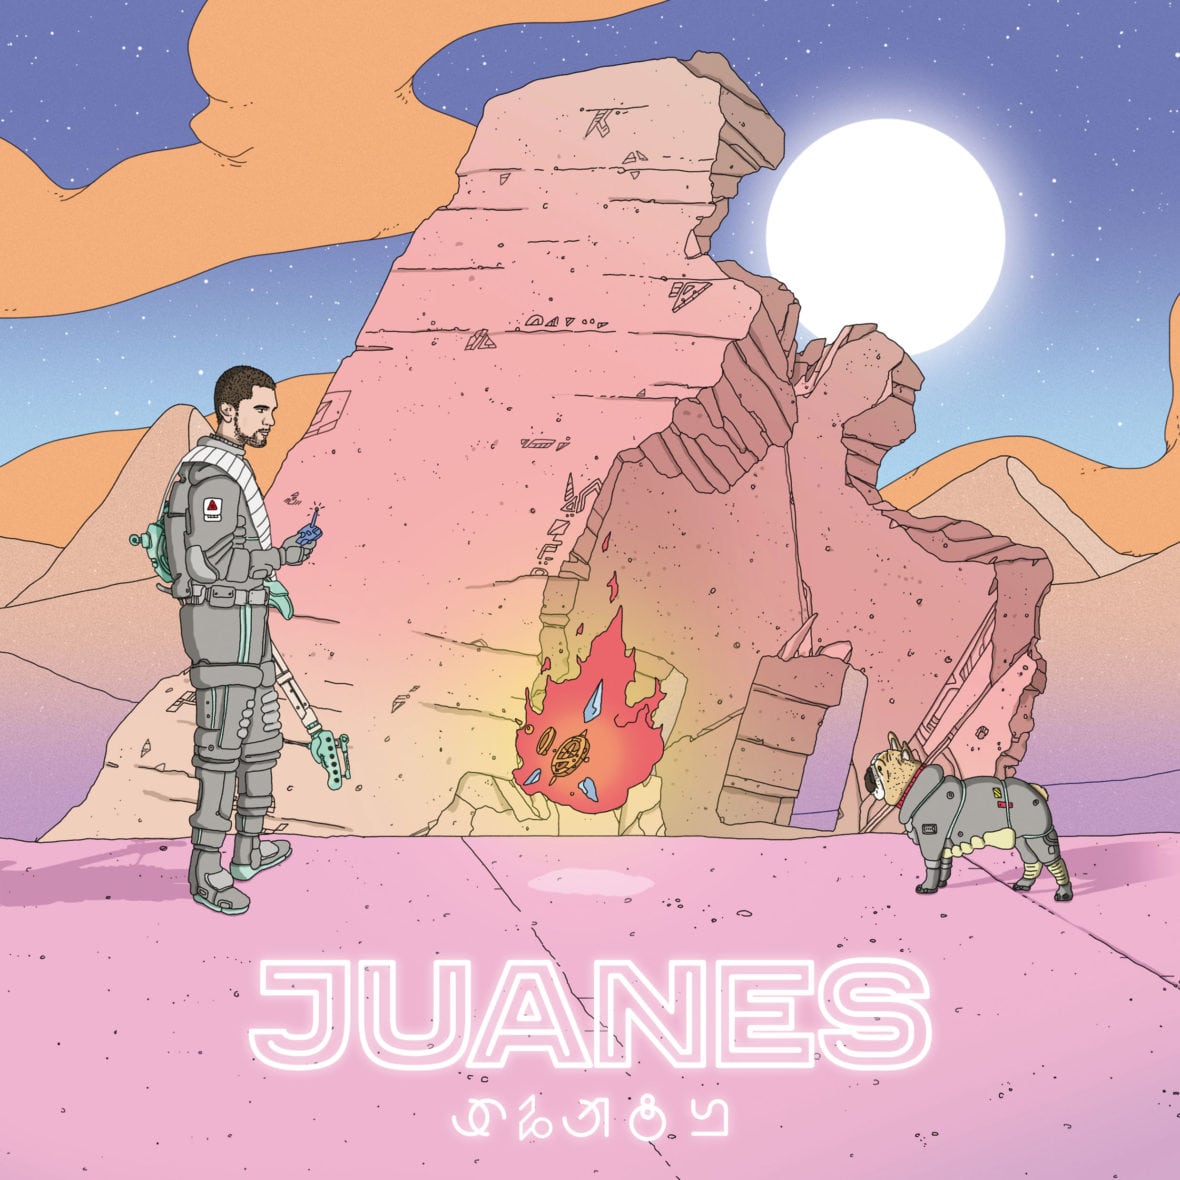 juanes-fuego-2016-2480x2480